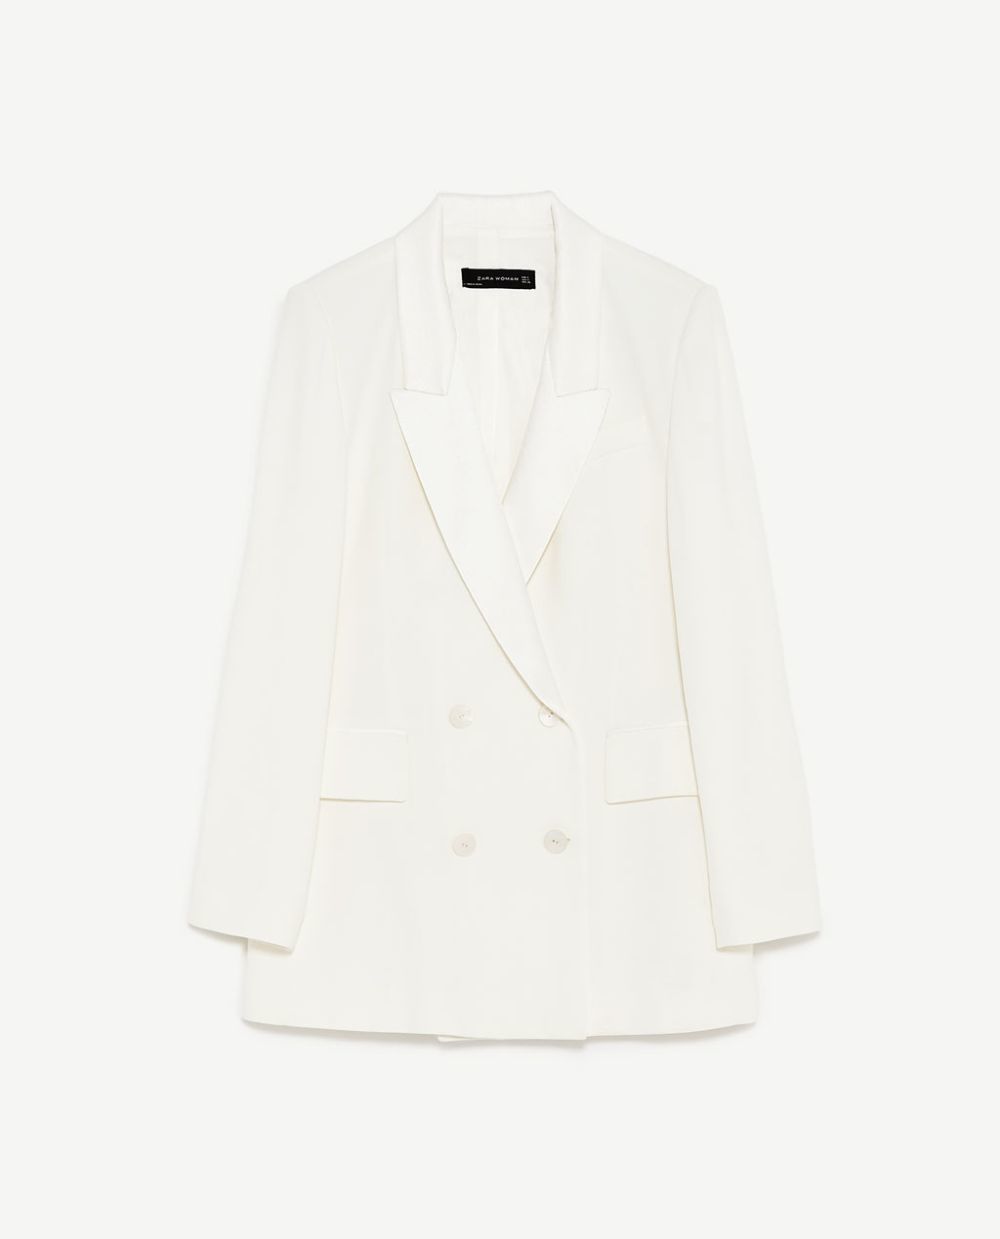 Blazer blanca cruzada. De Zara (69,95 euros).